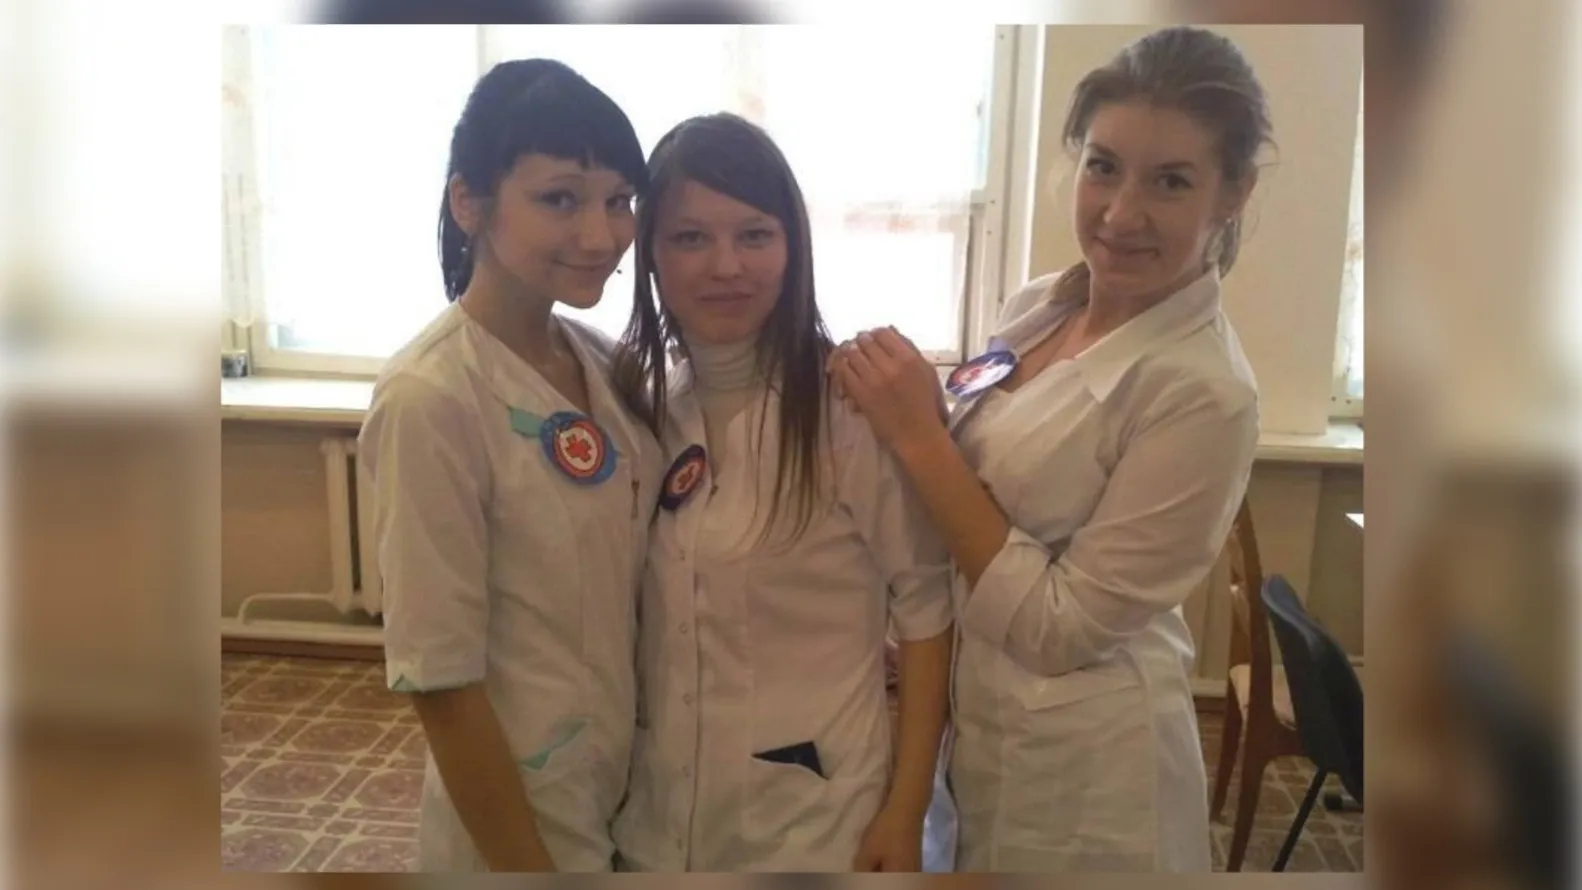 Олеся Рыбкина (в центре) всегда интересовалась медициной. Фото из архива Олеси Рыбкиной